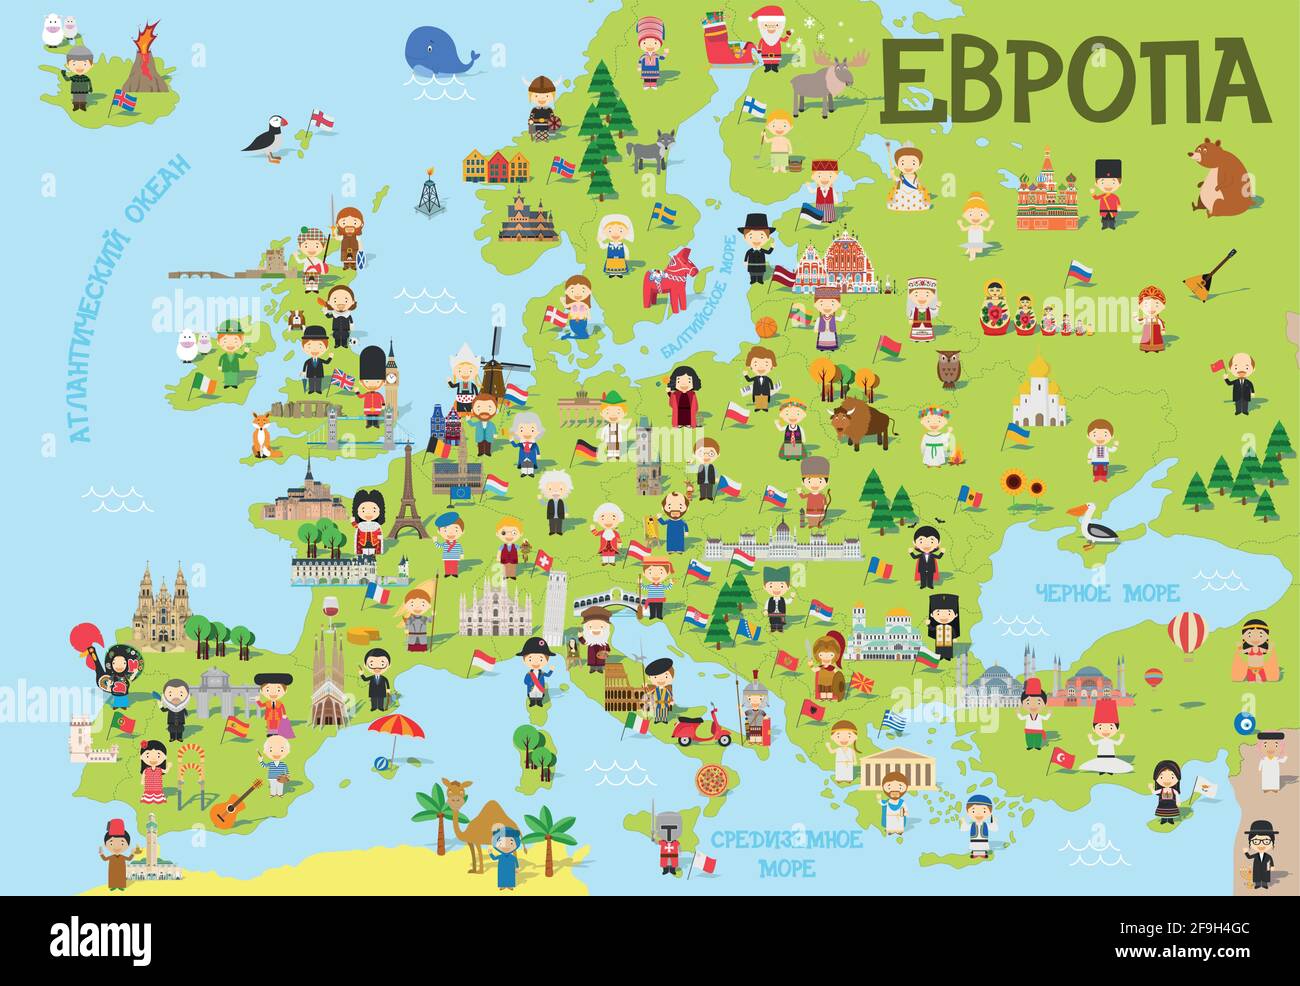 Divertente cartoni animati dell'Europa in russo con bambini di diverse nazionalità, monumenti rappresentativi, animali e oggetti di tutti i paesi. Illustrazione Vettoriale